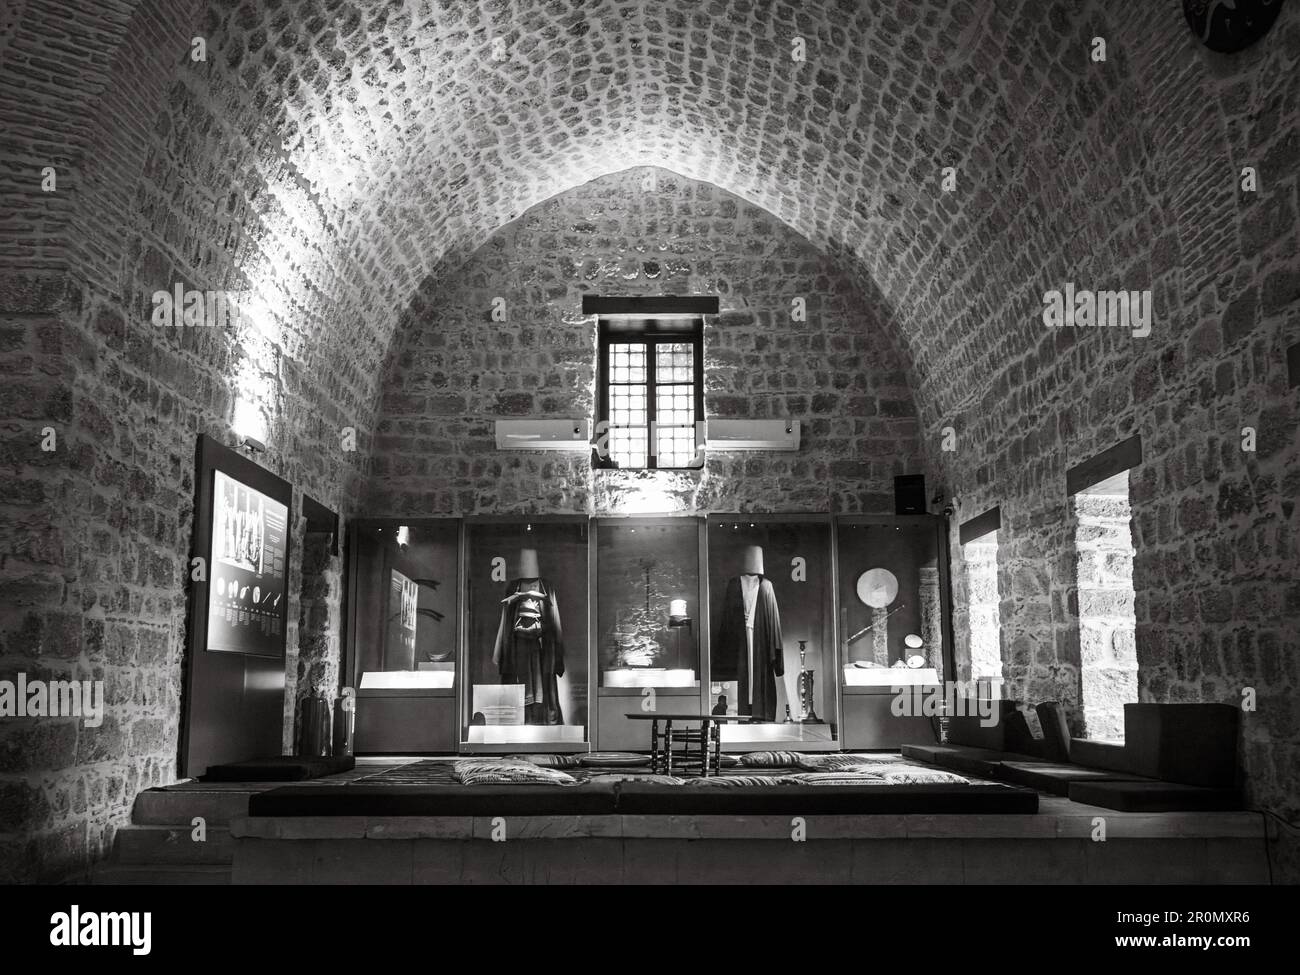 Expositions au Musée Mawlawi d'Antalya dans la vieille ville de Kaleici, Turquie (Turkiye). Le Musée de l'Islam soufi est abrité dans une mosquée ottomane datant de 16th ans, le kno Banque D'Images